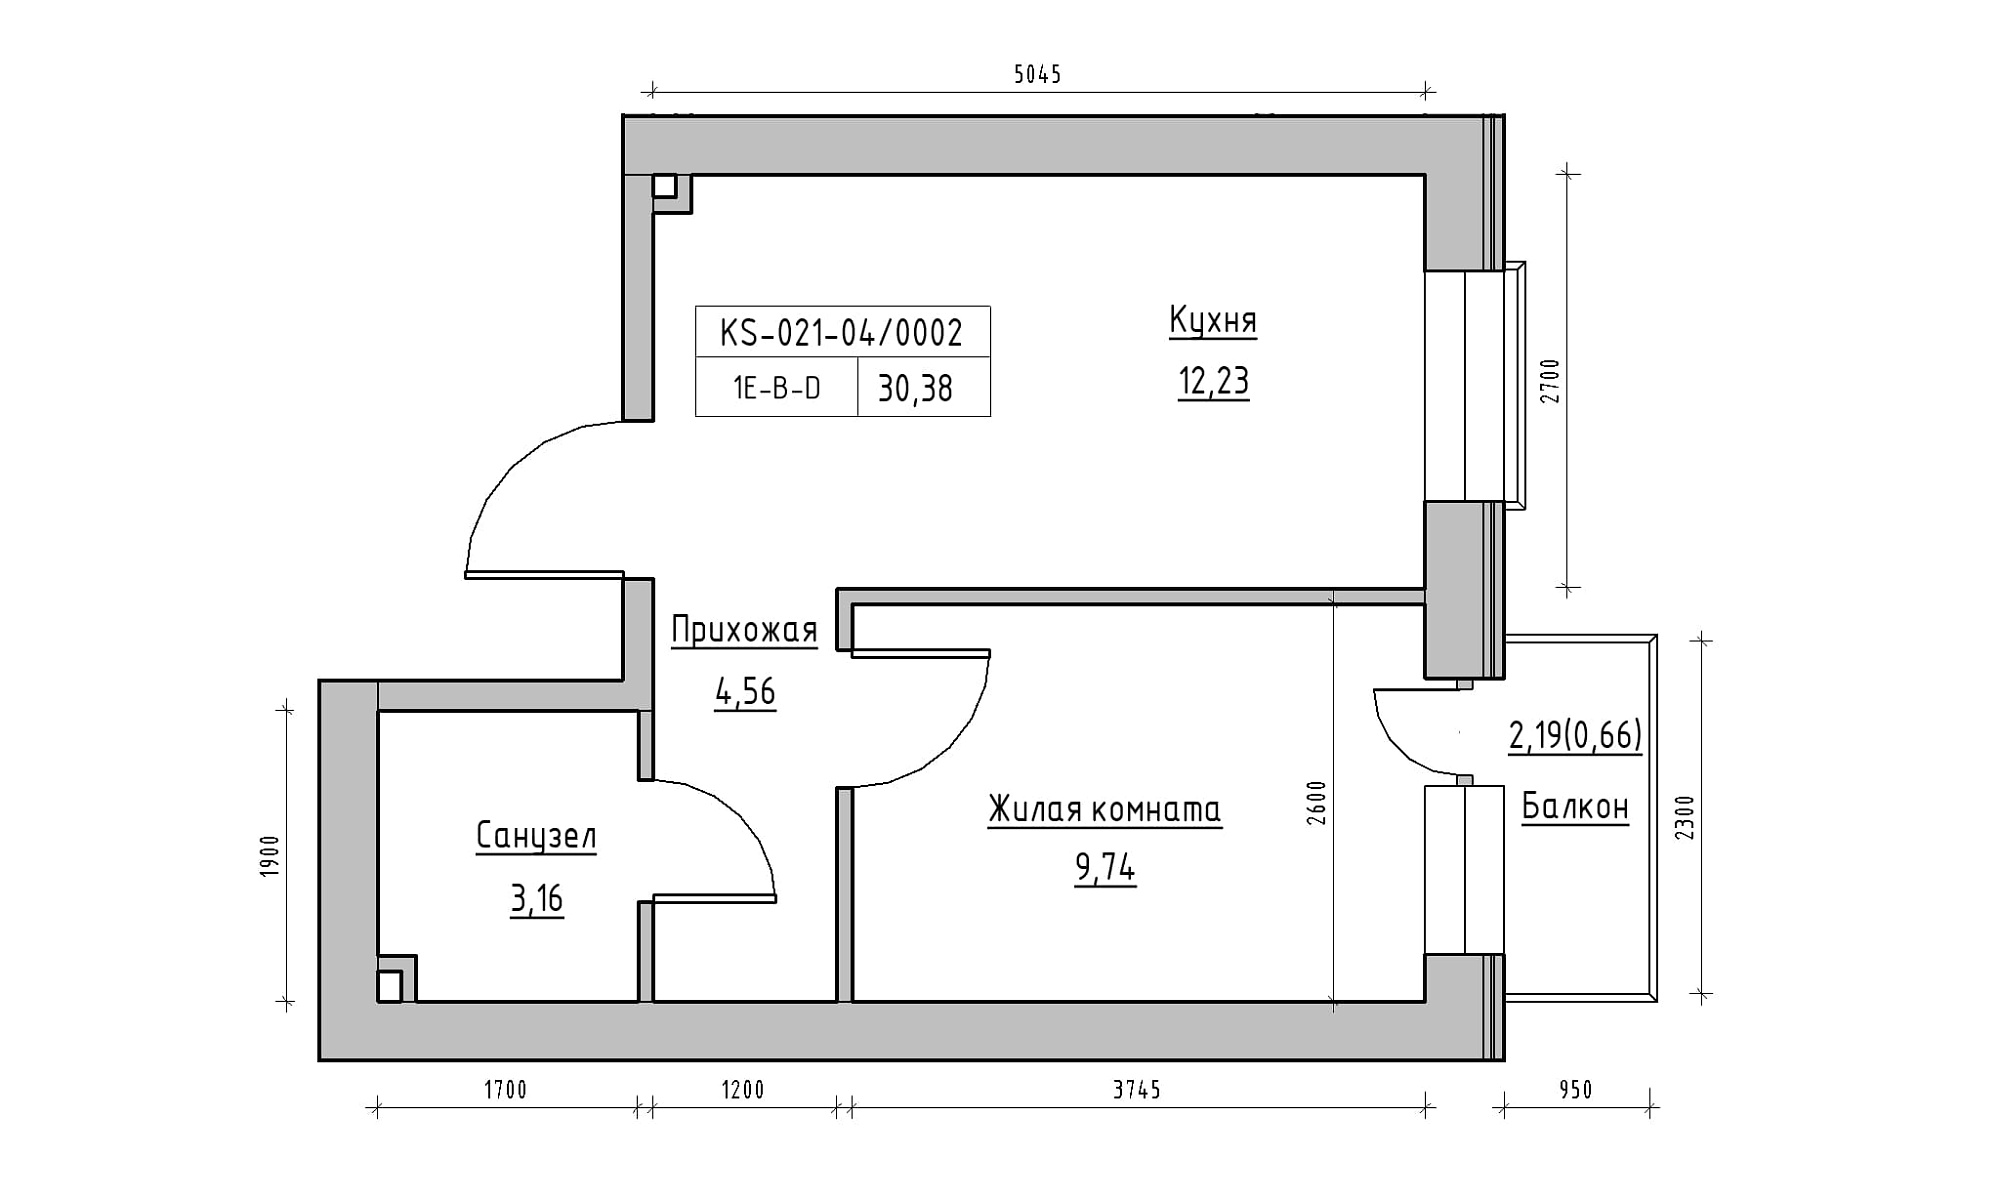 Планировка 1-к квартира площей 30.38м2, KS-021-04/0002.